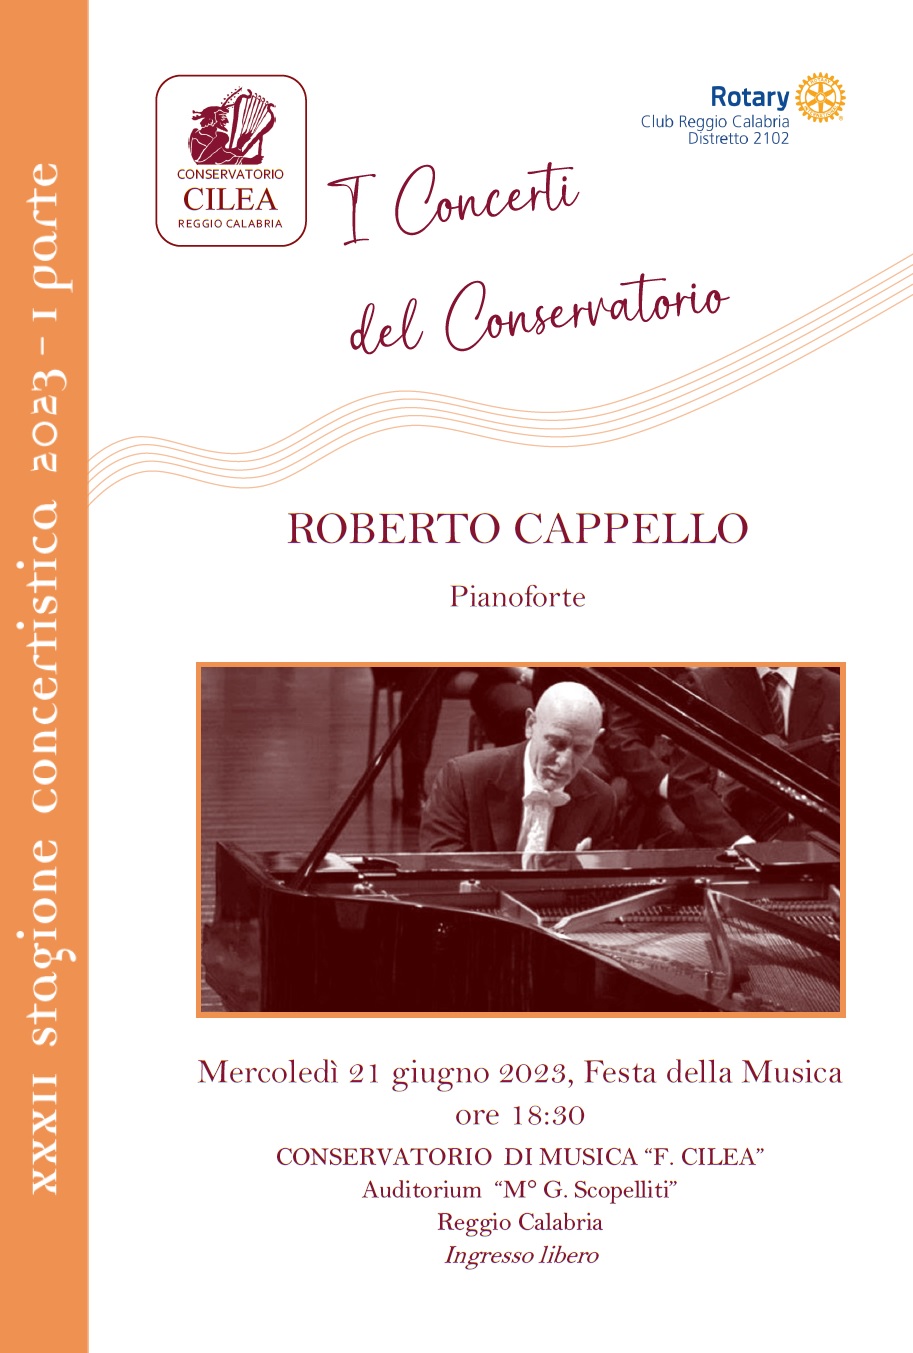 Concerto per la Festa della musica 2023- Roberto Cappello, pianoforte - 21 giugno 2023 ore 18.30 Conservatorio F. Cilea Reggio Calabria